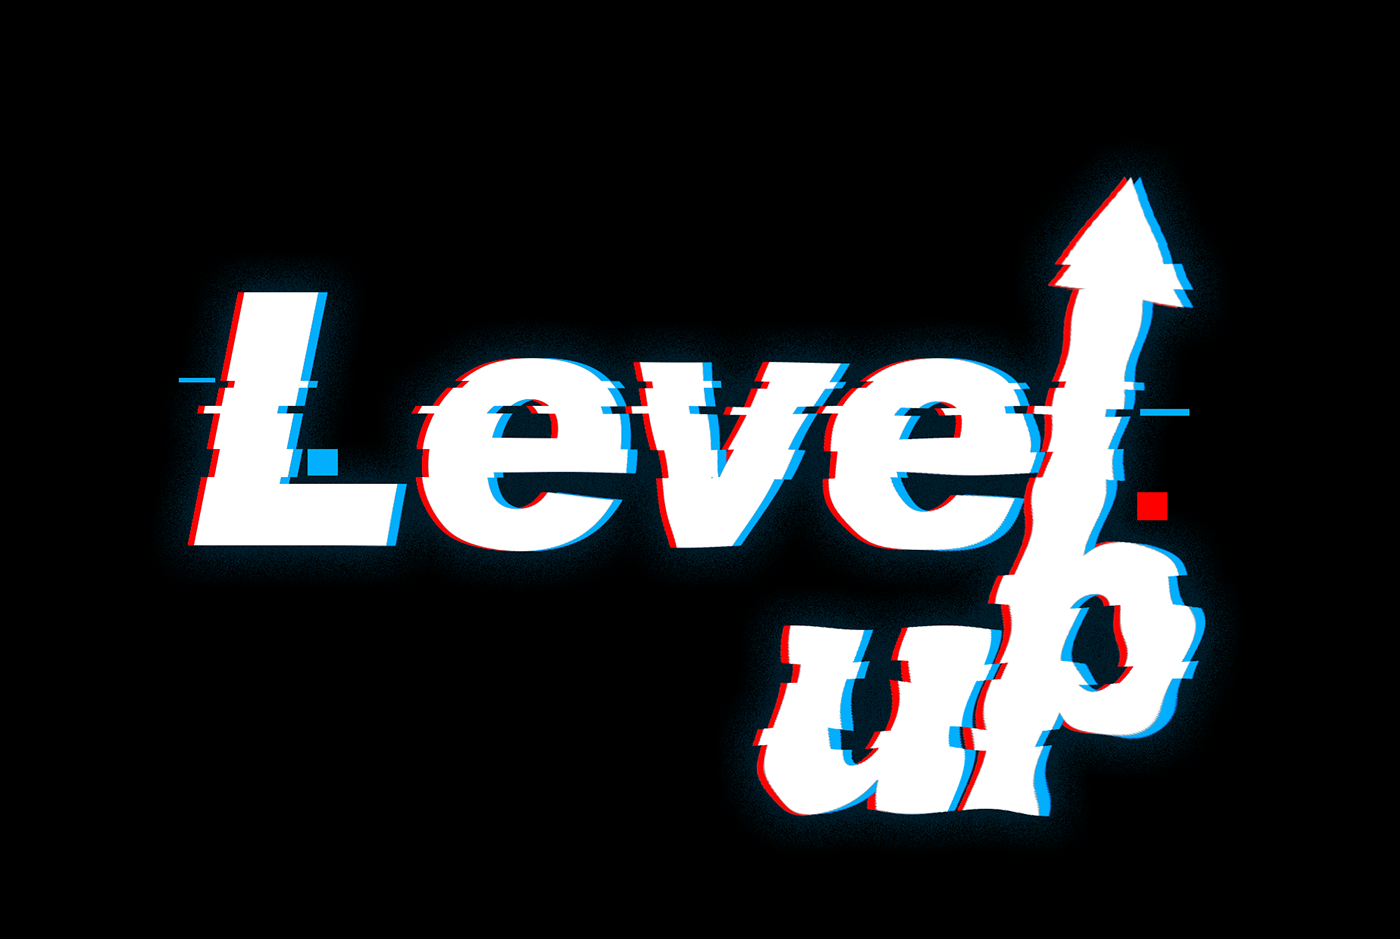 Уровень level up